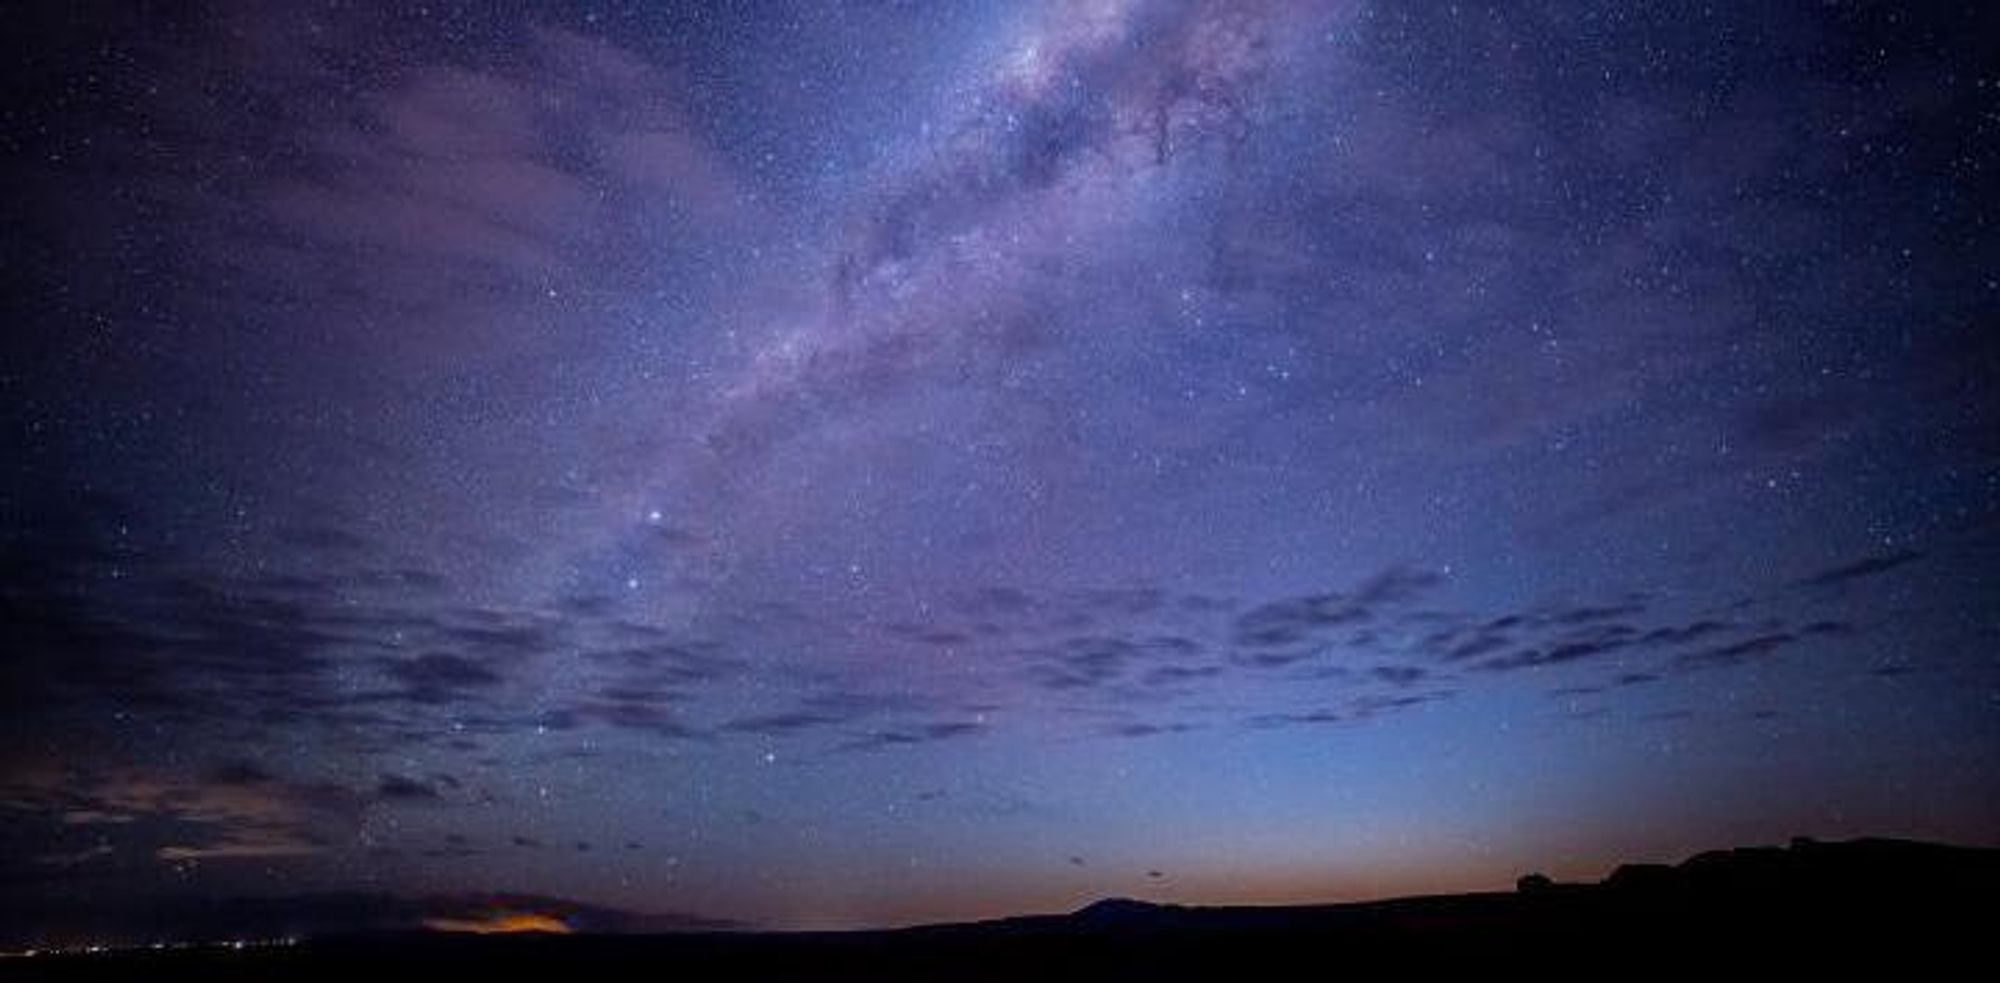 Night sky in the Atacama Desert.